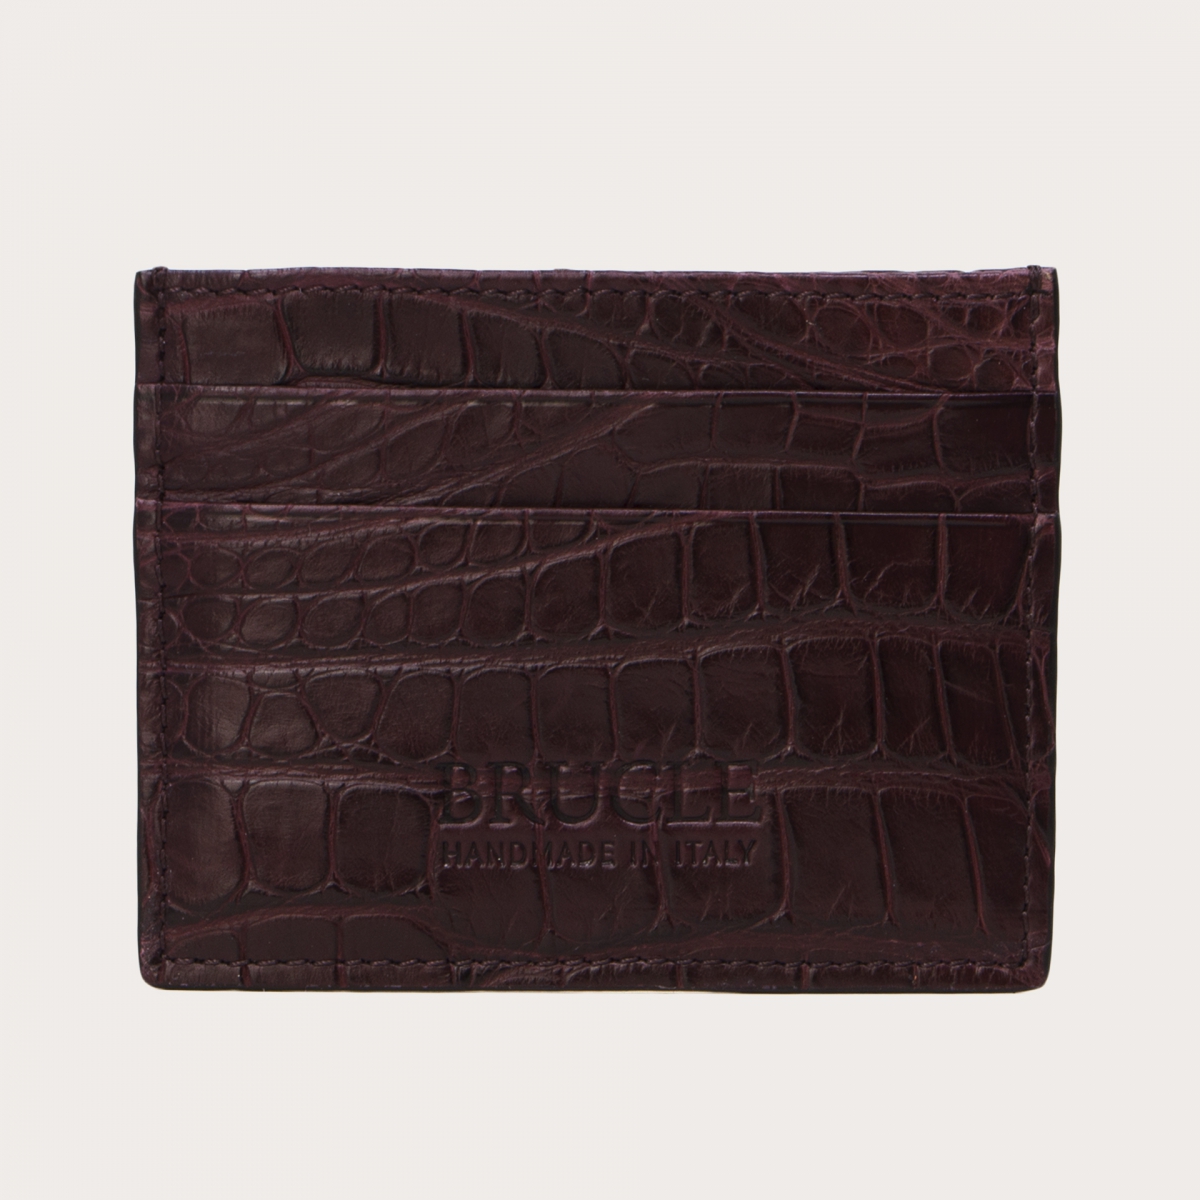 BRUCLE Credit card holder in genuine alligator, burgundy